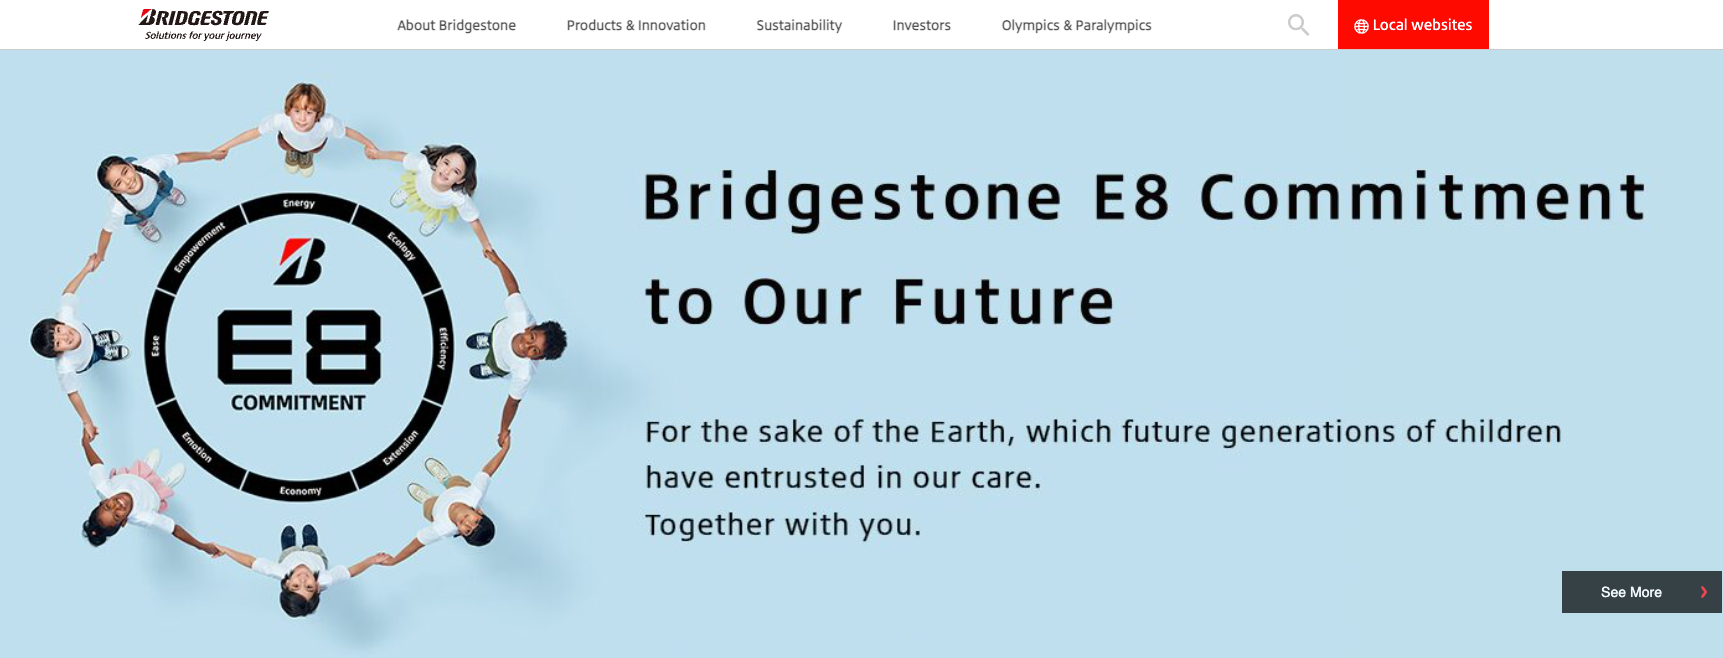 bridgestone careers official site